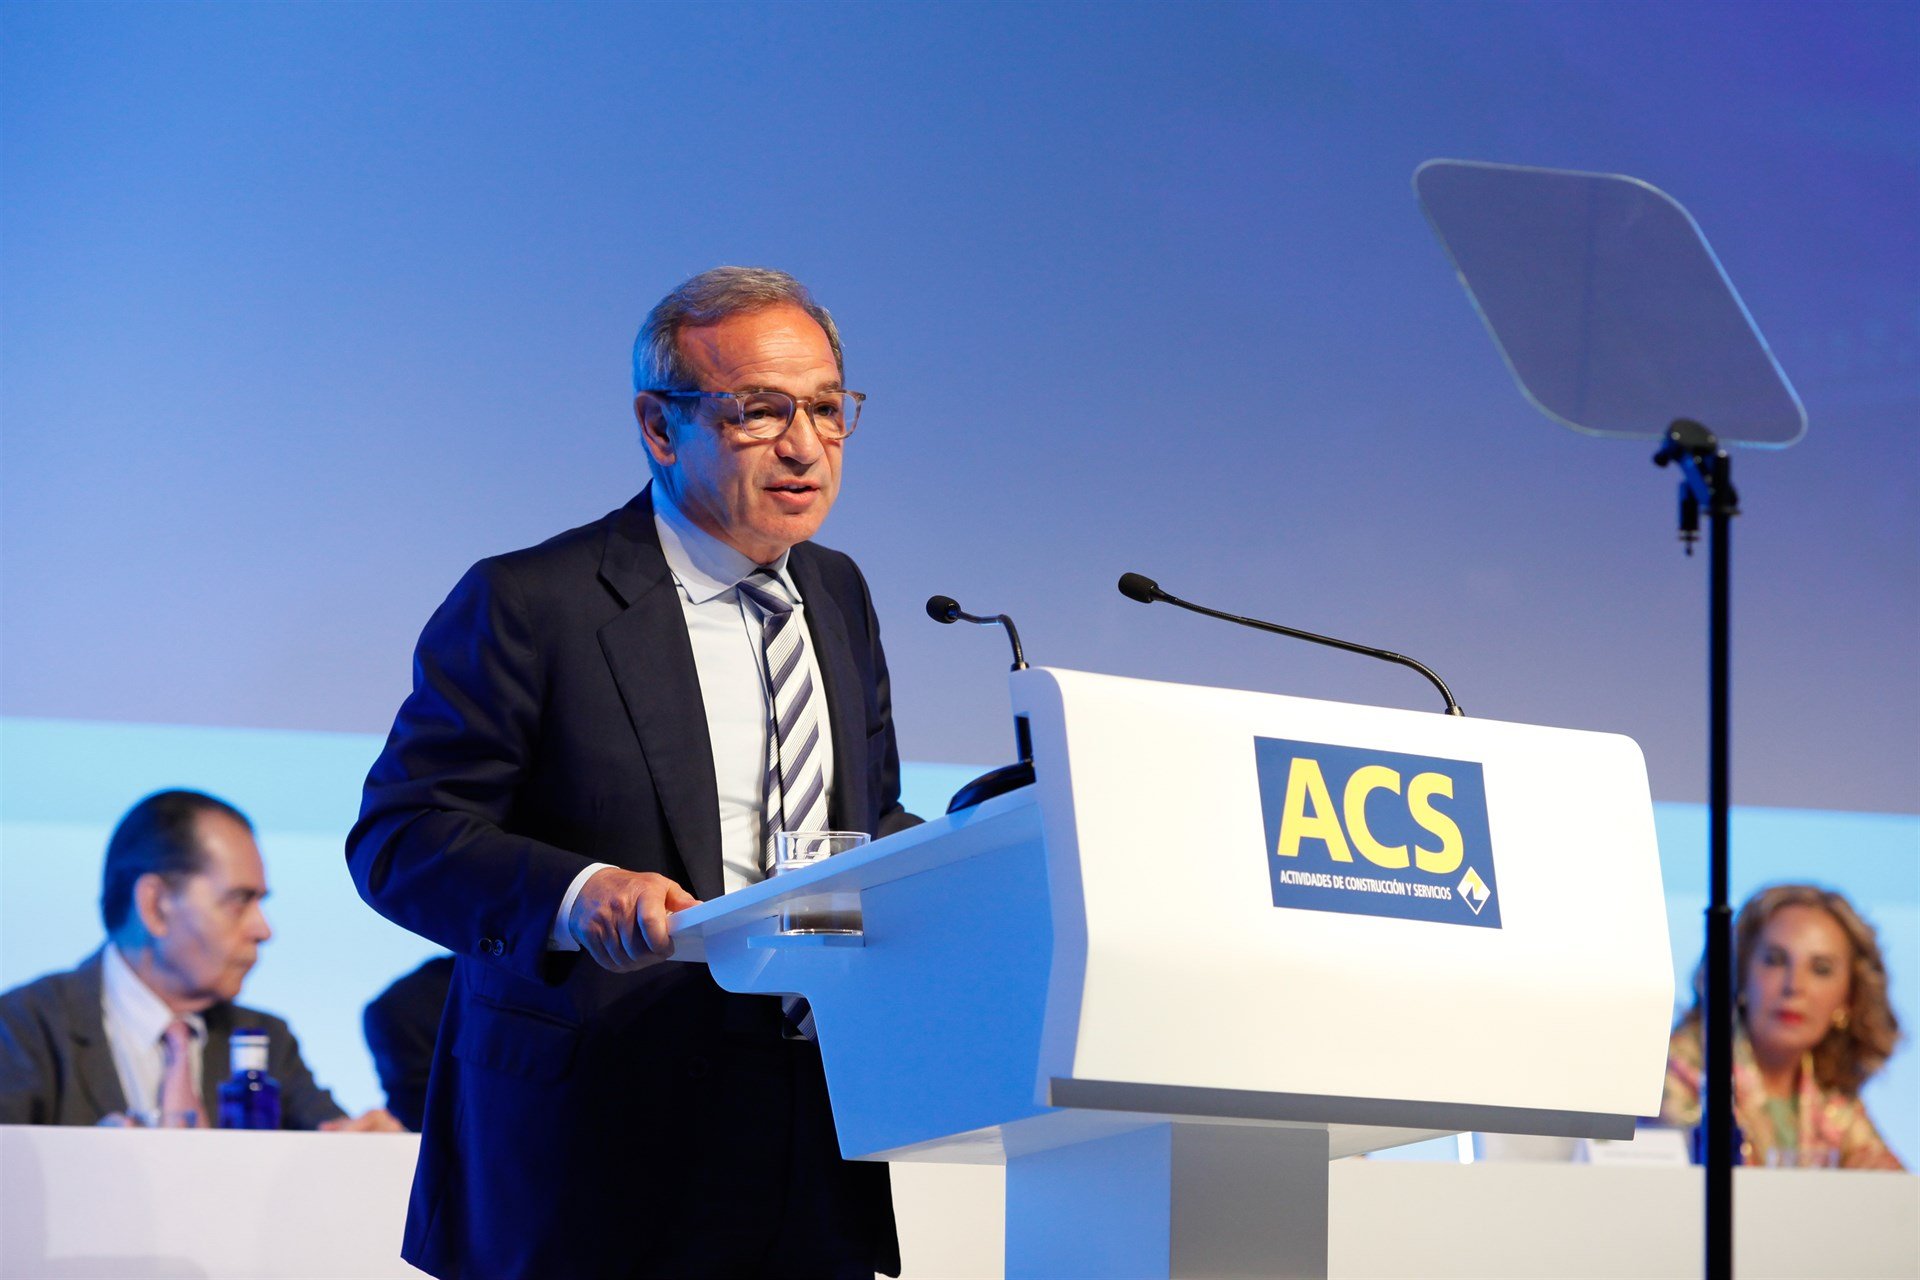 ACS i Atlantia augmenten el control sobre Abertis fins el 83,3% del capital